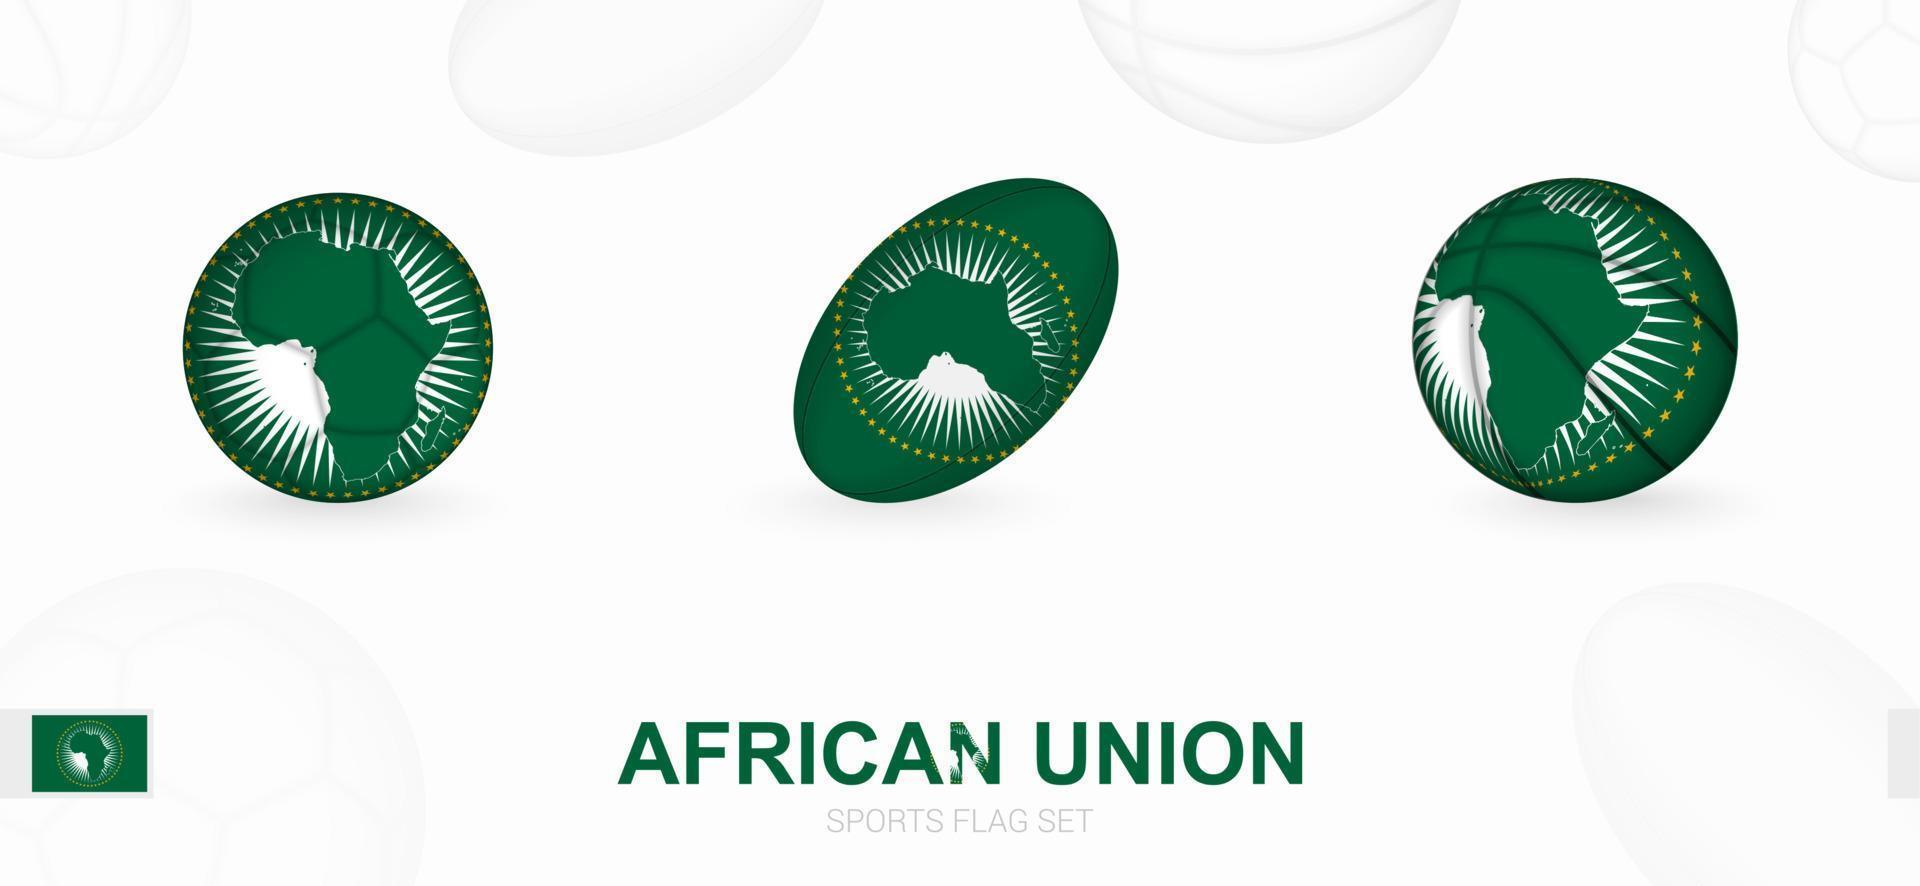 Esportes ícones para futebol, rúgbi e basquetebol com a bandeira do africano União. vetor